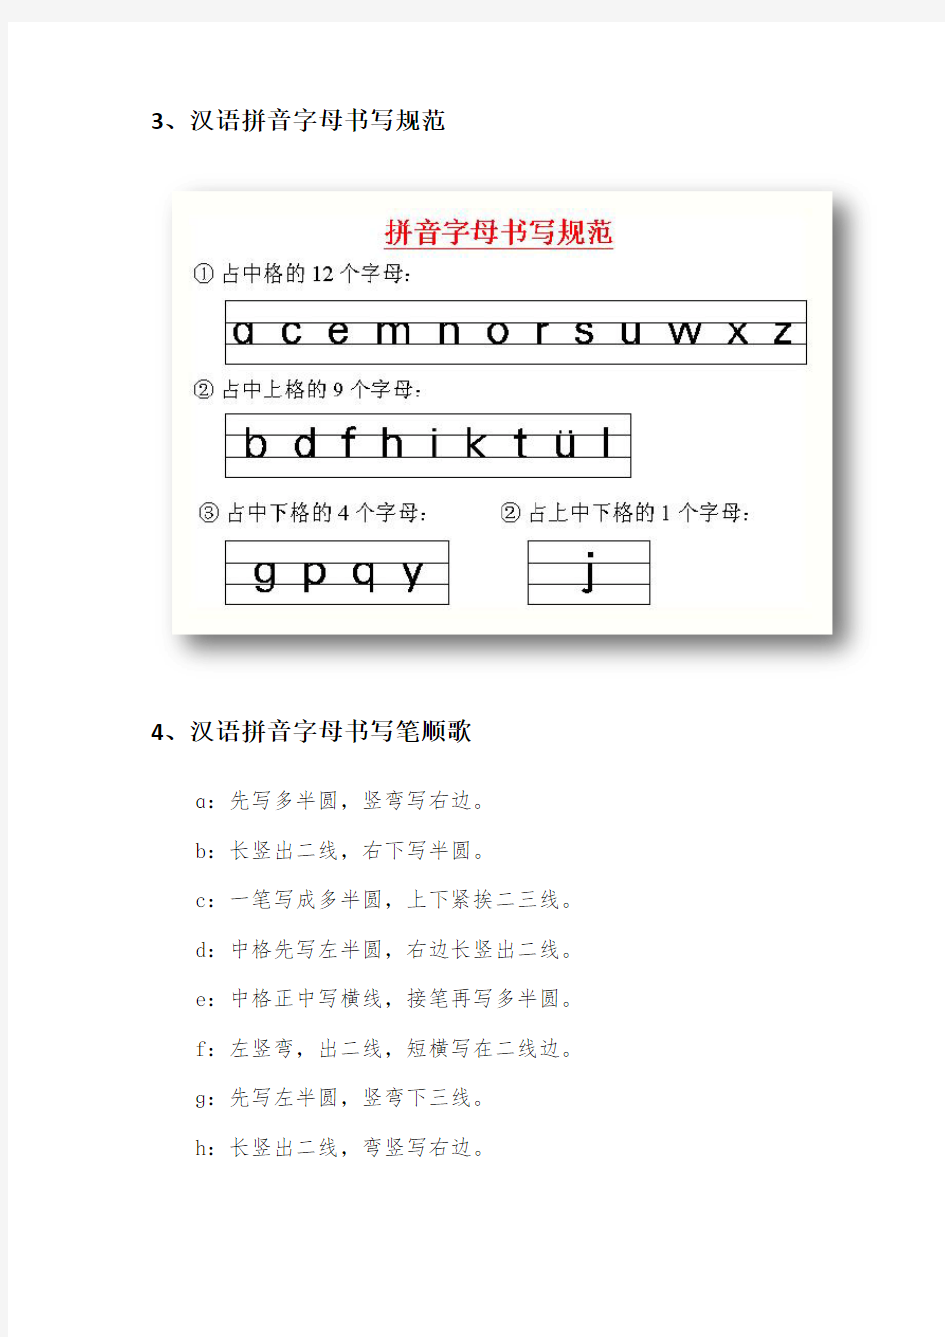 汉语拼音字母的书写规范